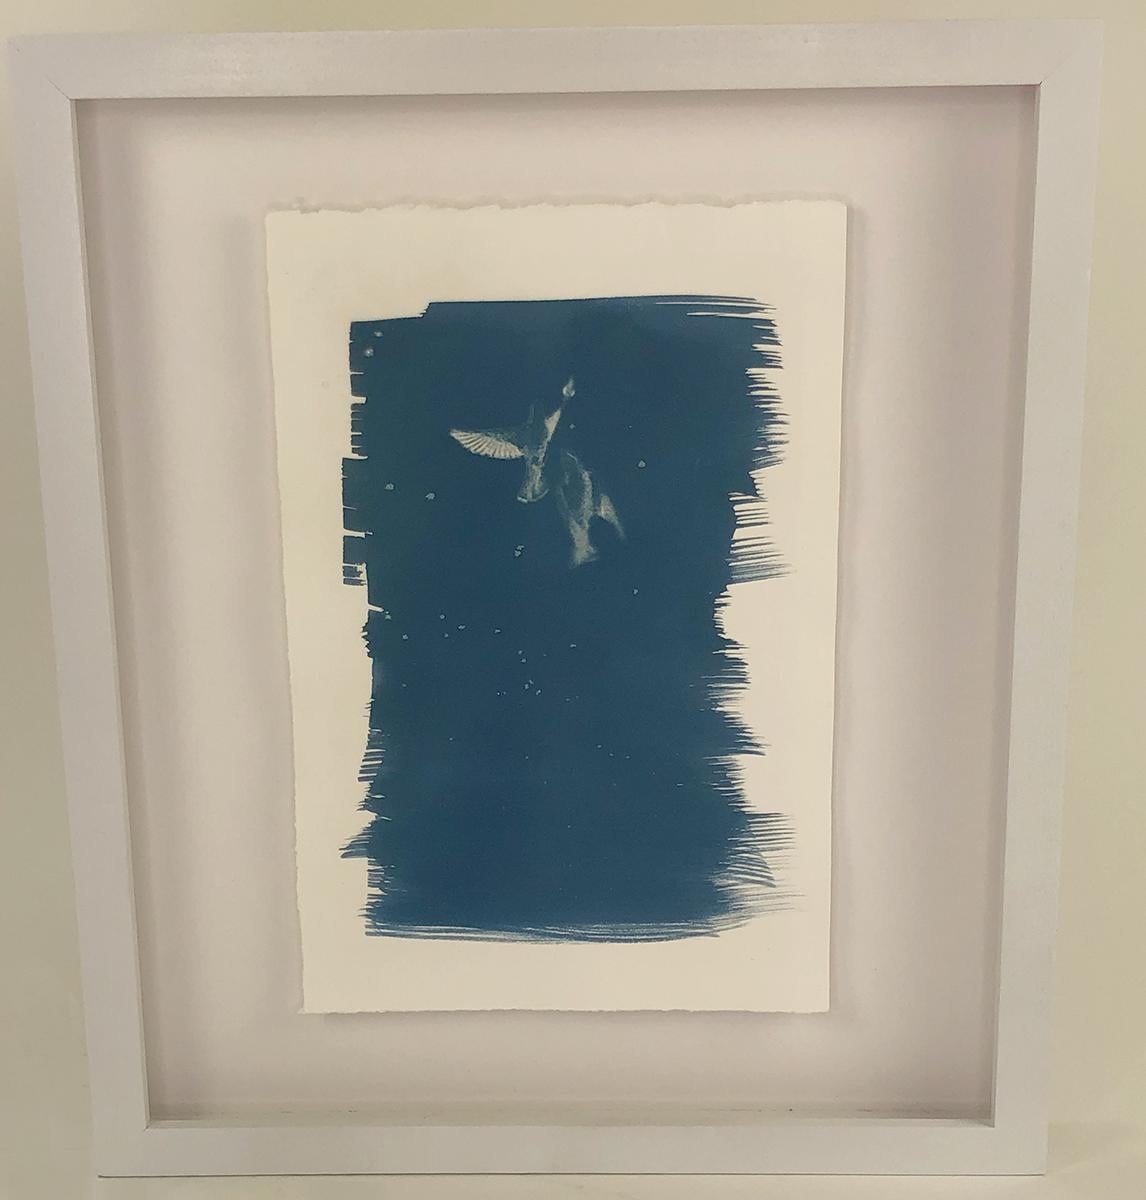 Dieser Satz elegant gerahmter Cyanotypie-Drucke wurde von der Künstlerin Sarah L. Morton im Jahr 2021 geschaffen. Sarah ist eine alternative Prozess- und abstrakte Künstlerin aus Atlanta, GA. Alle Drucke sind Cyanotypien auf Stonehenge-Papier, die